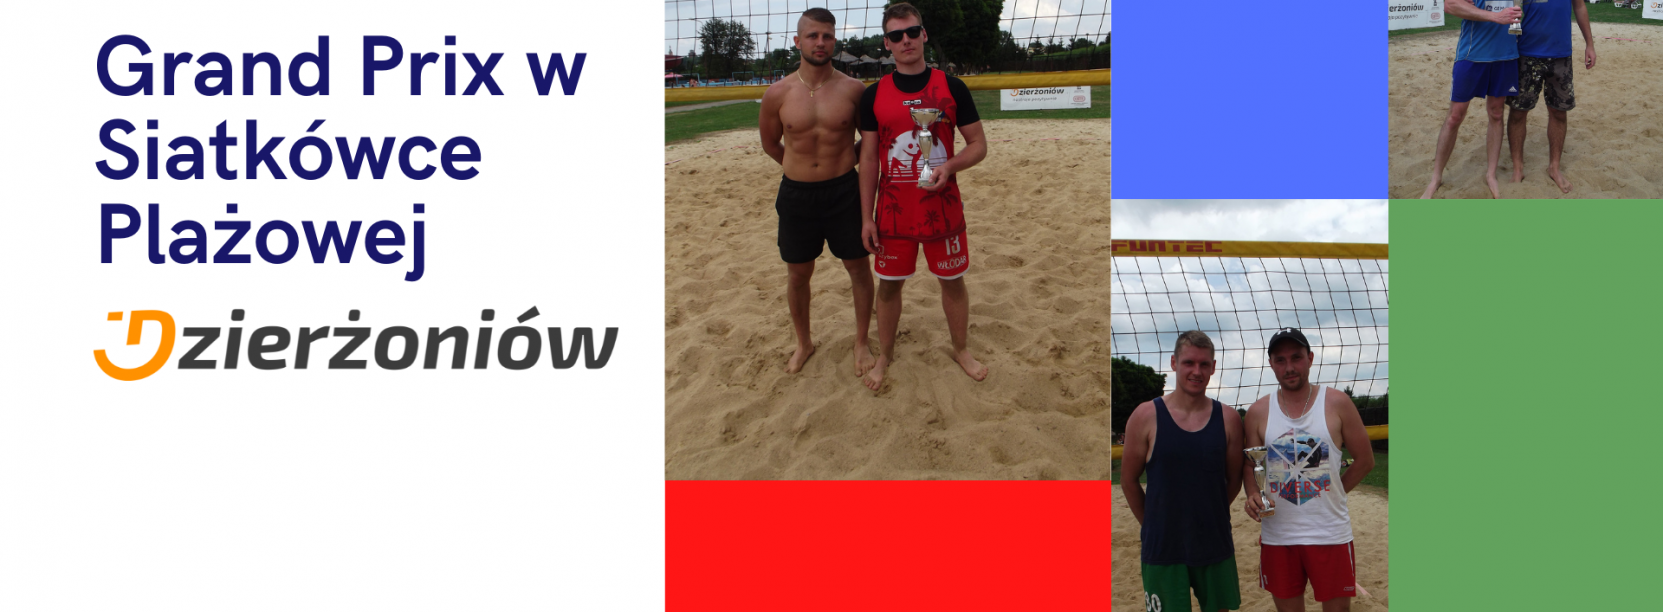 Kolaż zdjęć z zawodnikami siatkówki plażowej, którzy zajęli 1-3 miejsce w I Grand Prix oraz logo Dzierżoniowa